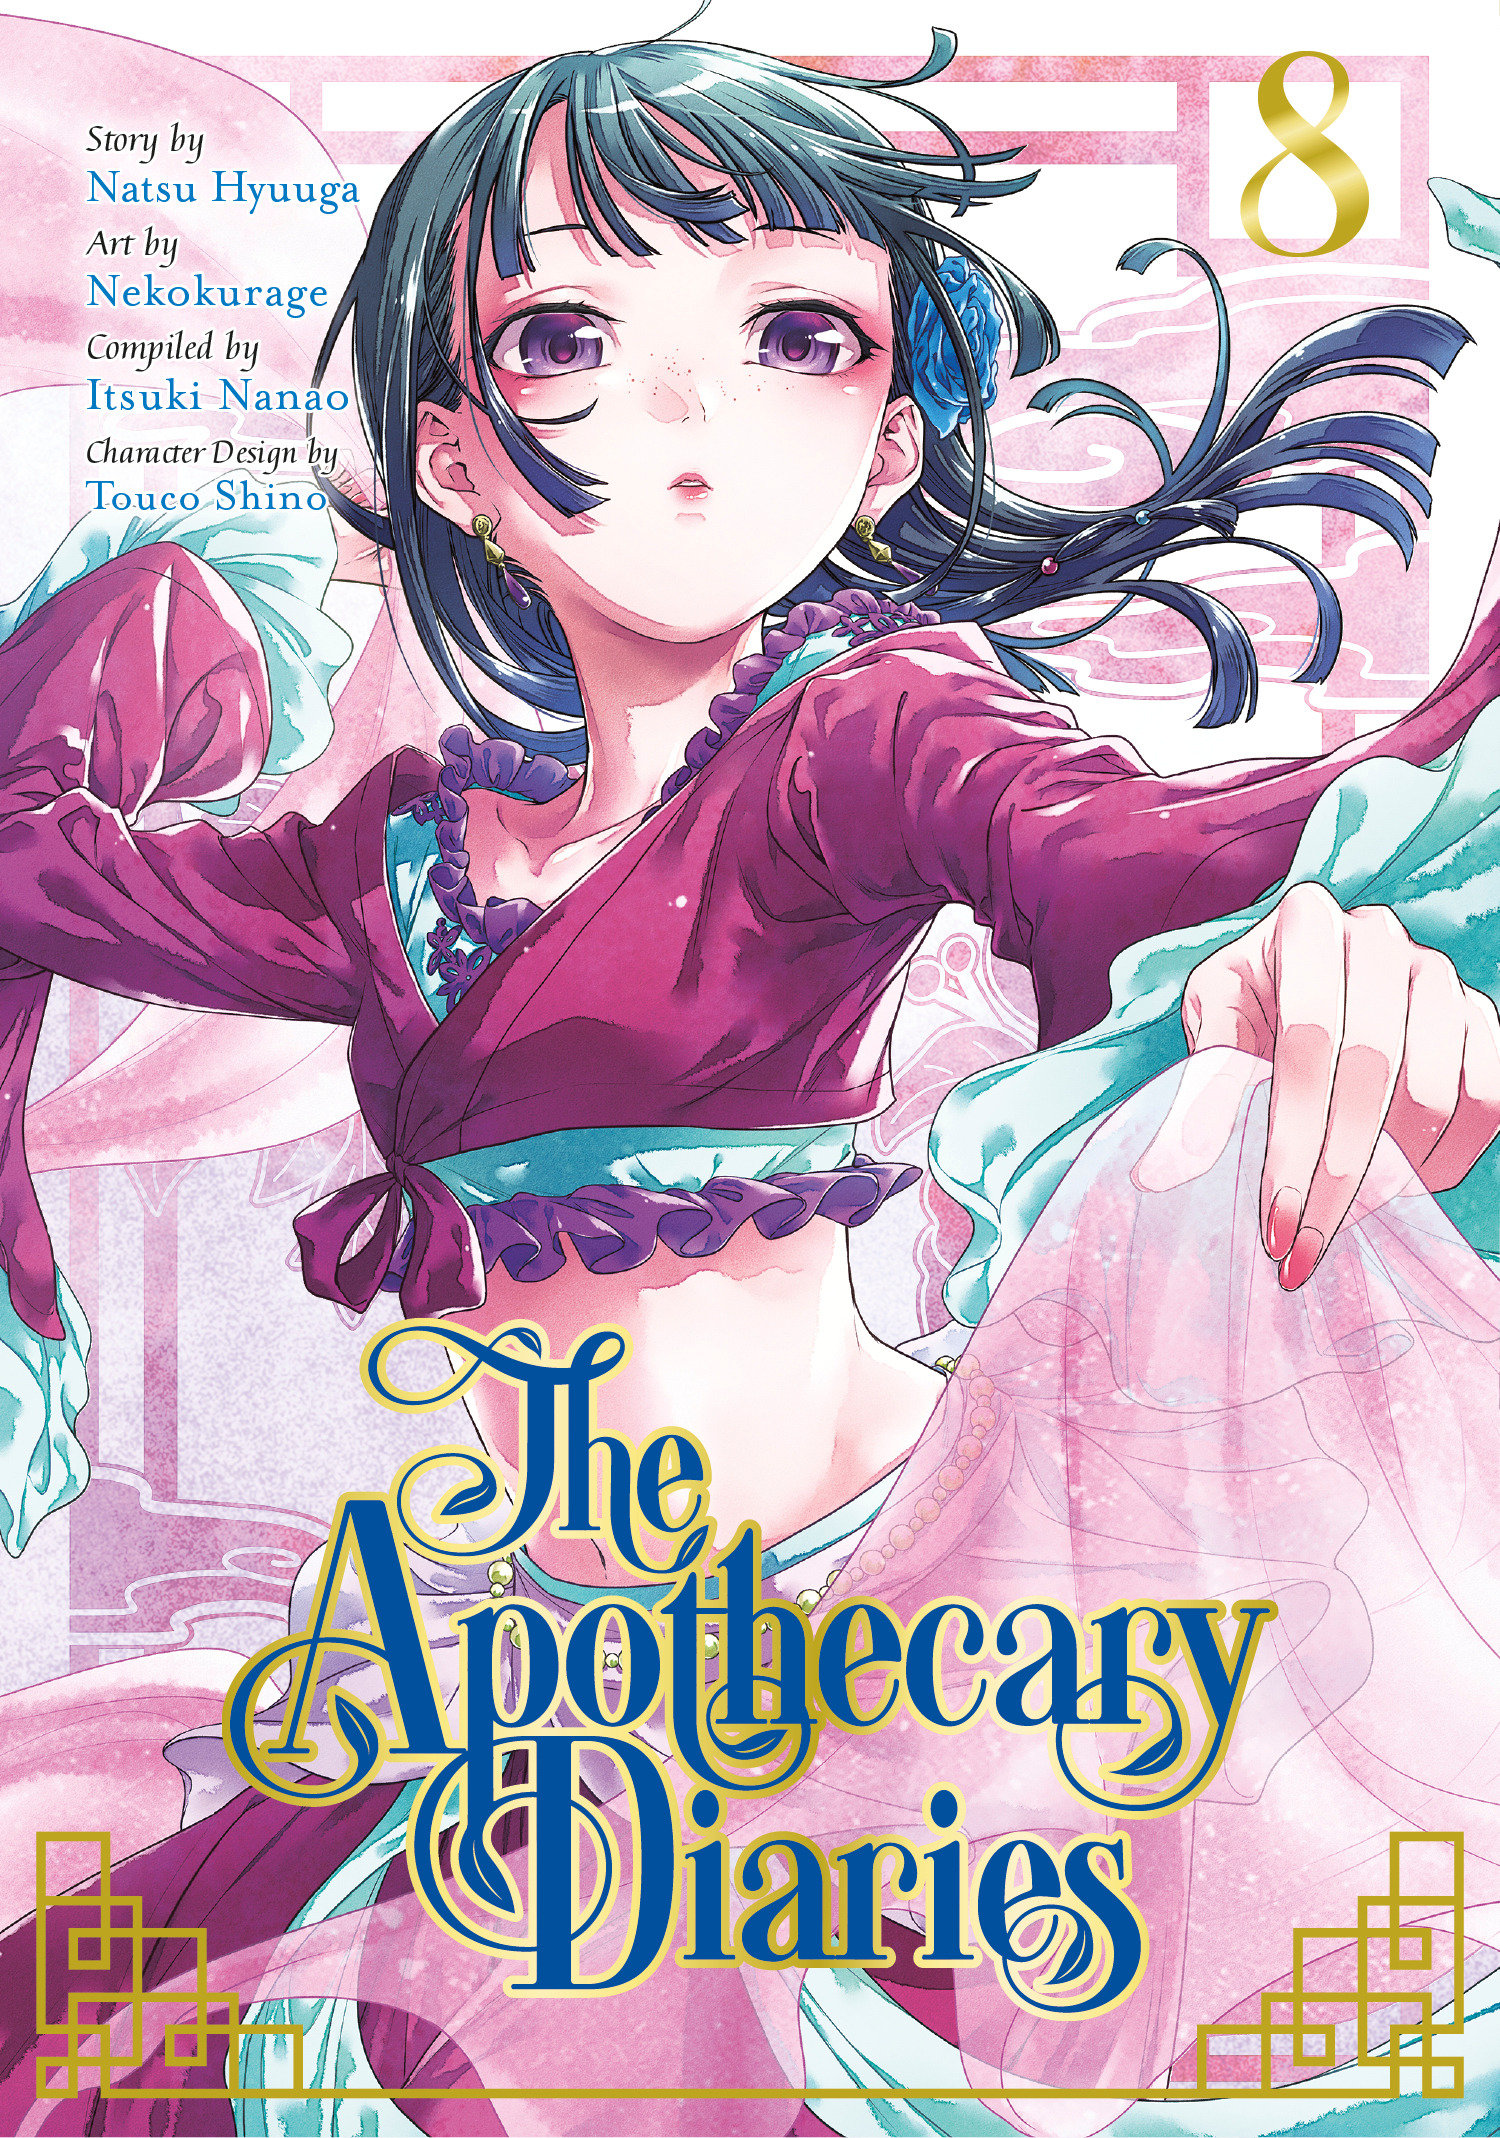 Apothecary Diaries Manga Volume 8